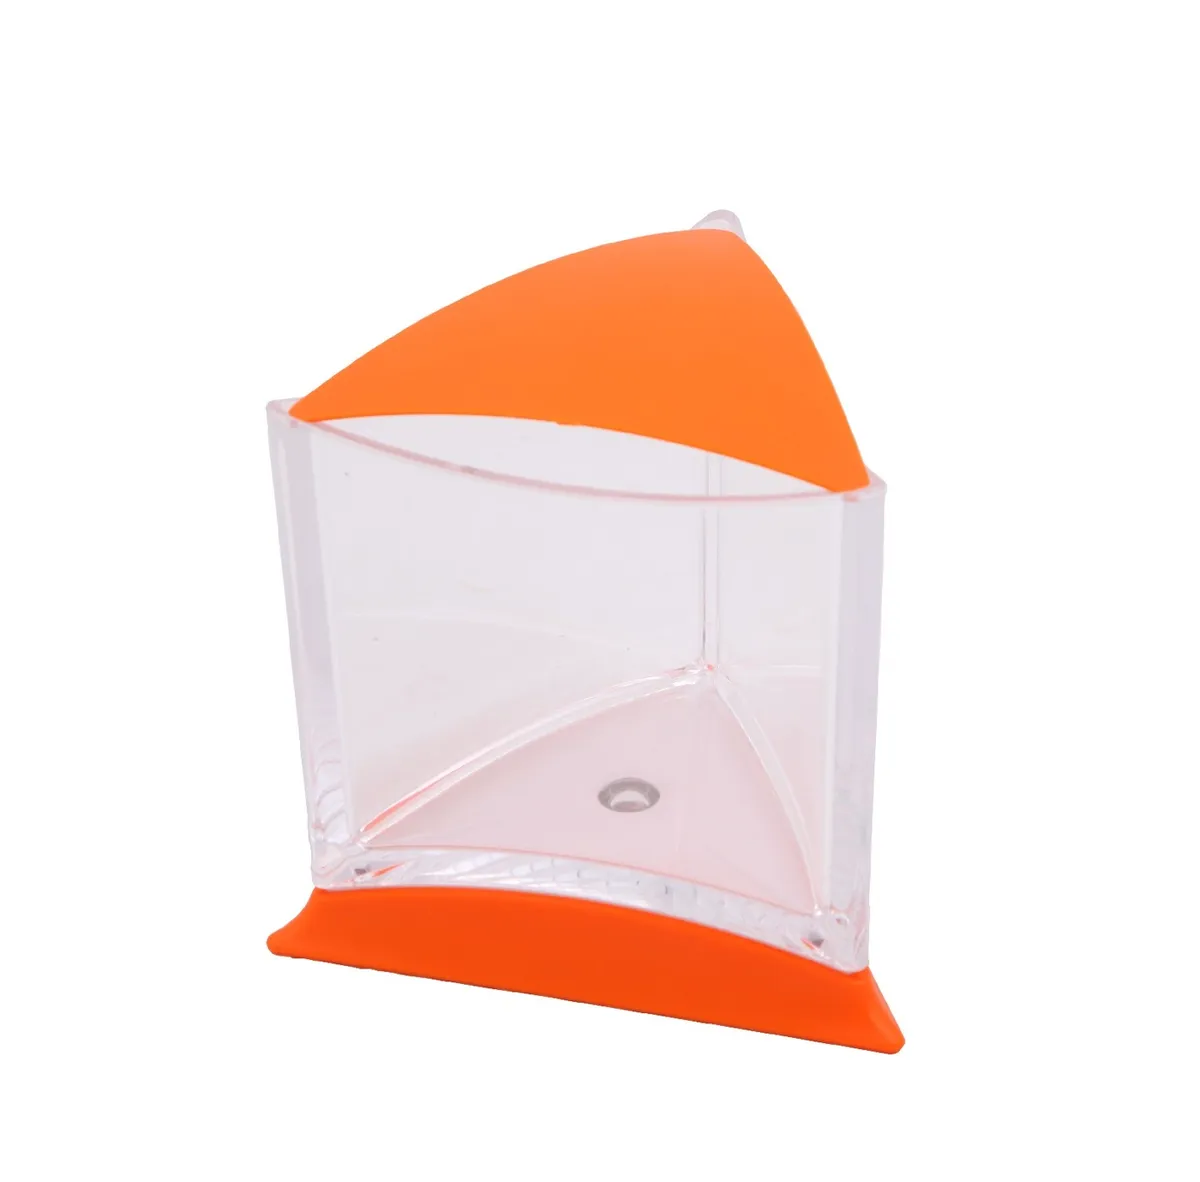 Прочее Аквариум треугольный для рыбки петушка со светодиодной лампой, оранжевый